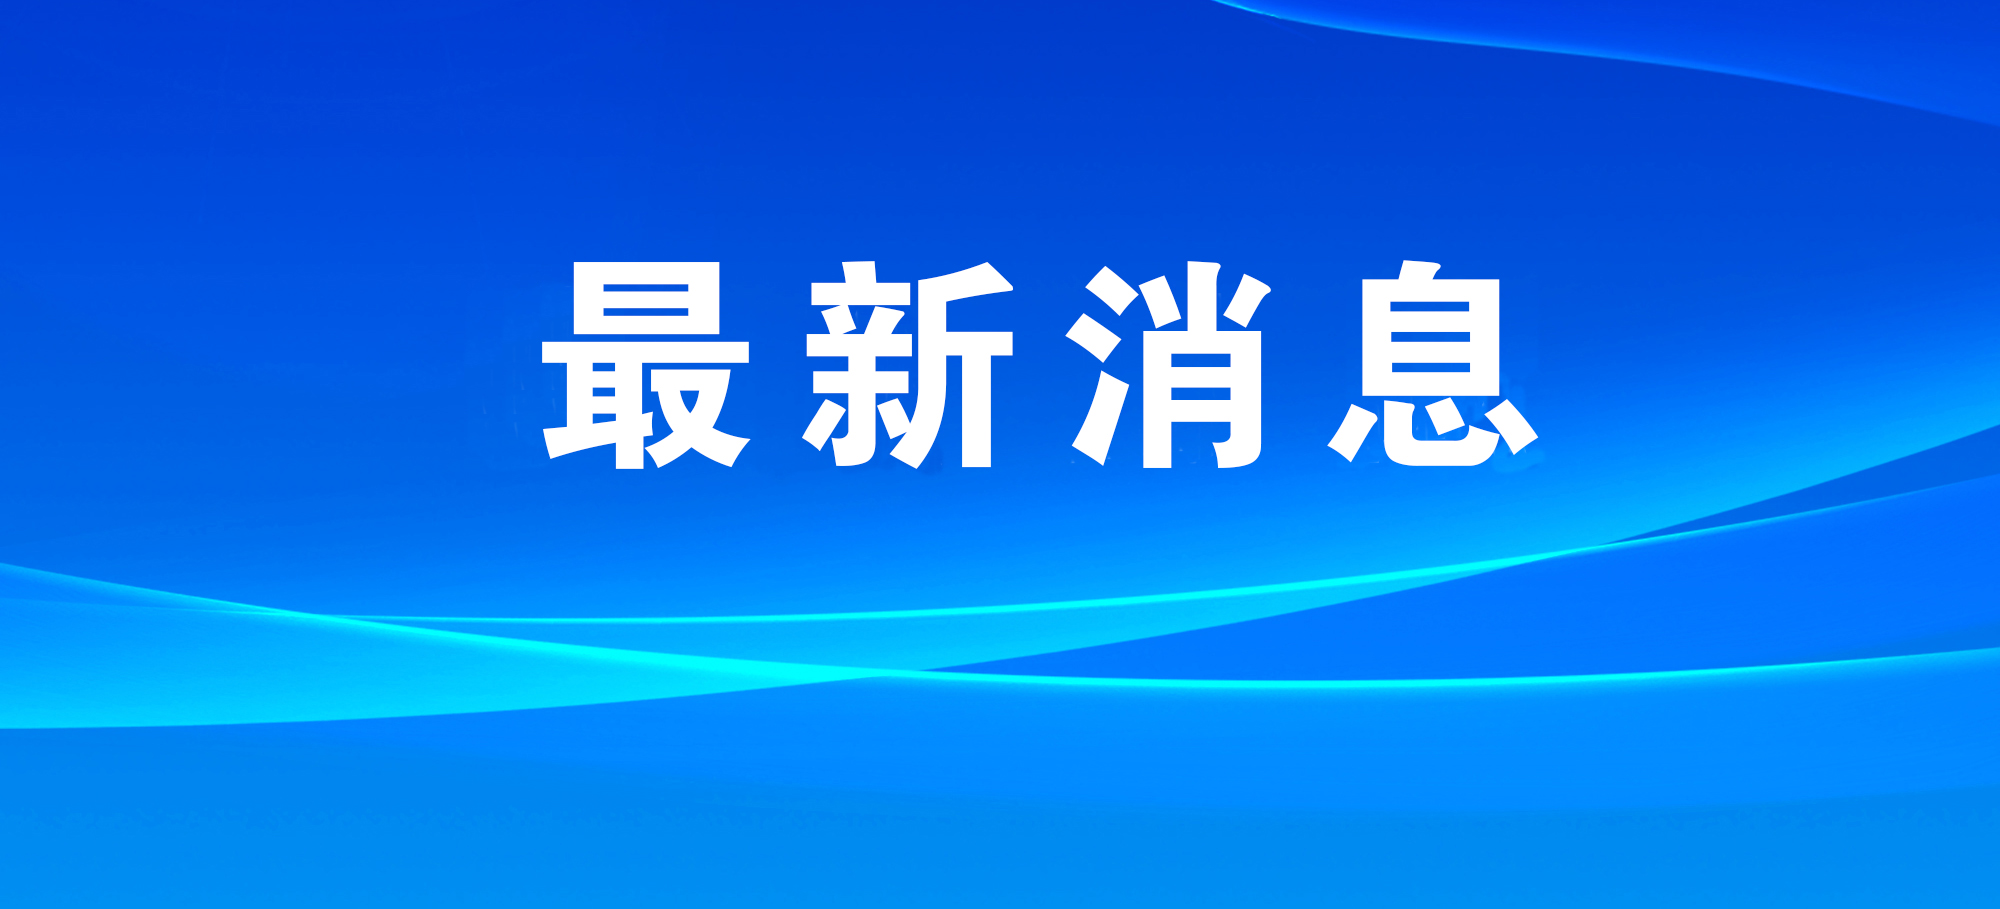 应急管理部派工作组指导大秦铁路天津蓟州段货运列车追尾事故处置